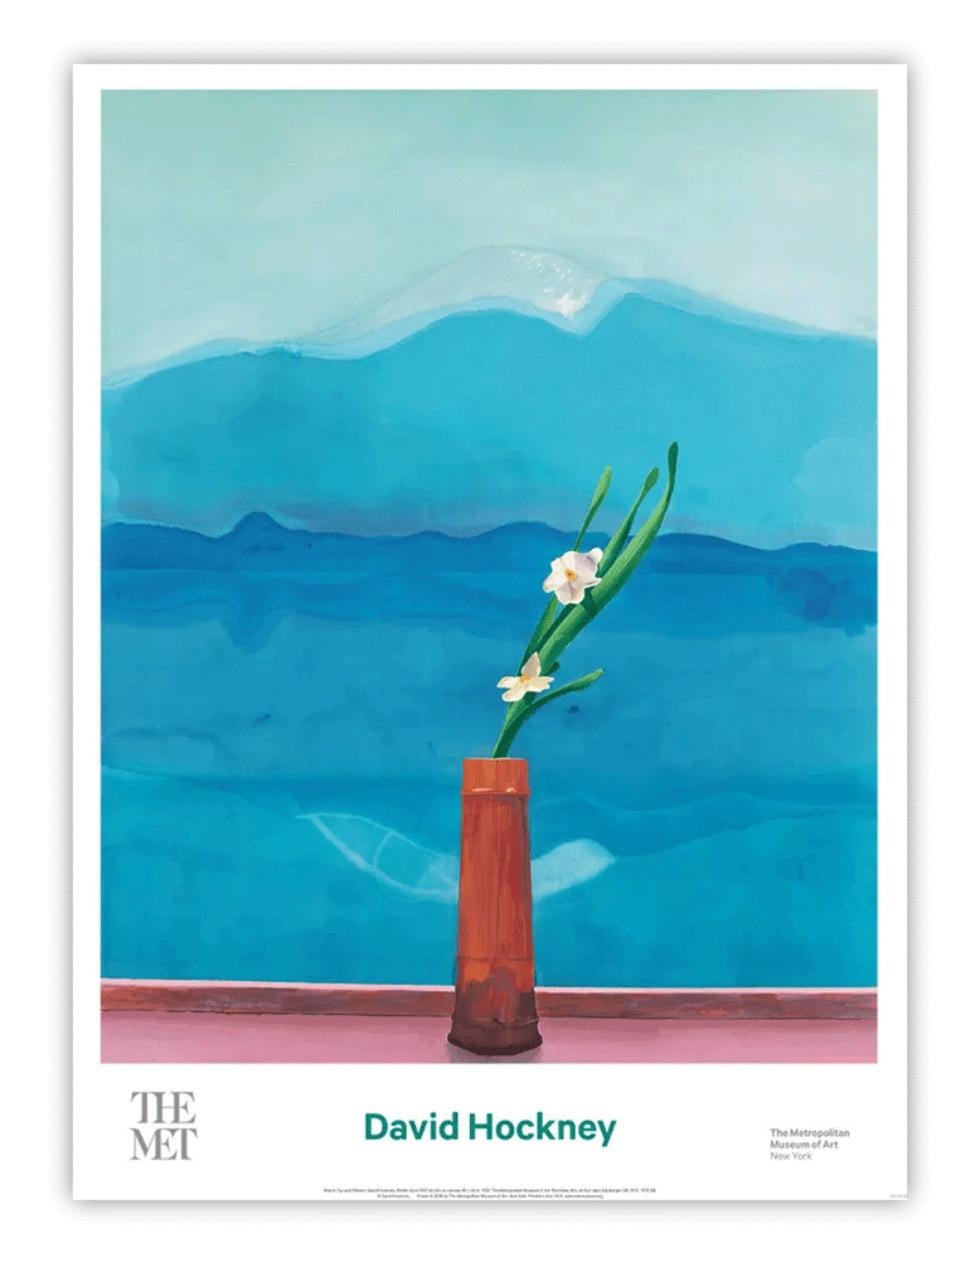 David Hockney, Berg Fuji und Blumen, 2016

Offsetlithographie

63.5 x 86.5 cm

Originalplakat des MET mit Hockneys Gemälde "Mount Fuji and Flowers" von 1972

Von der Galerie ausgestelltes Echtheitszertifikat